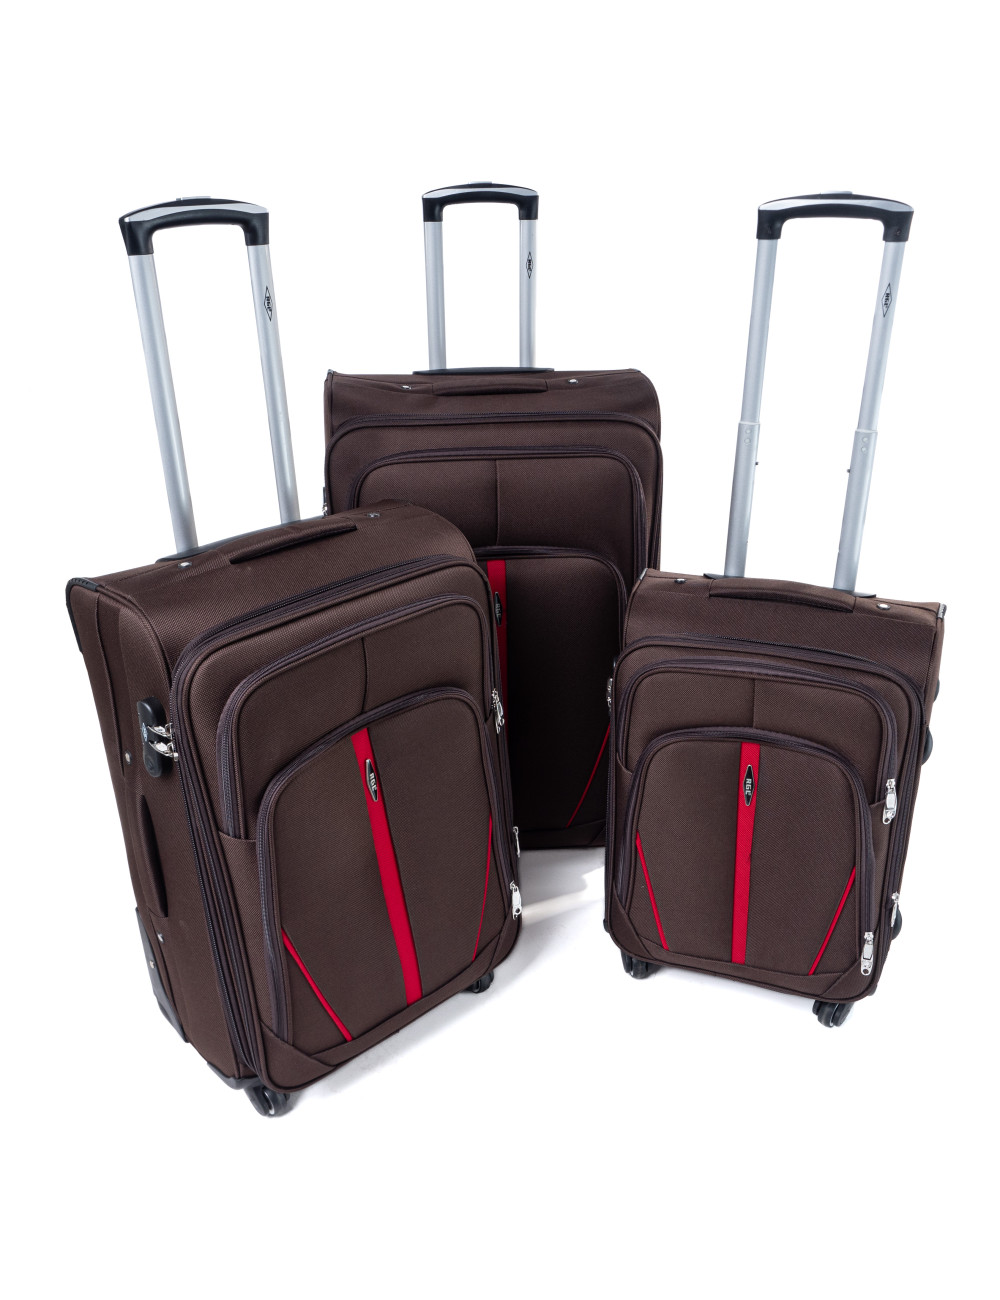 Zestaw walizek podróżnych na kółkach 3w1 S-020  XXL XL L - brązow